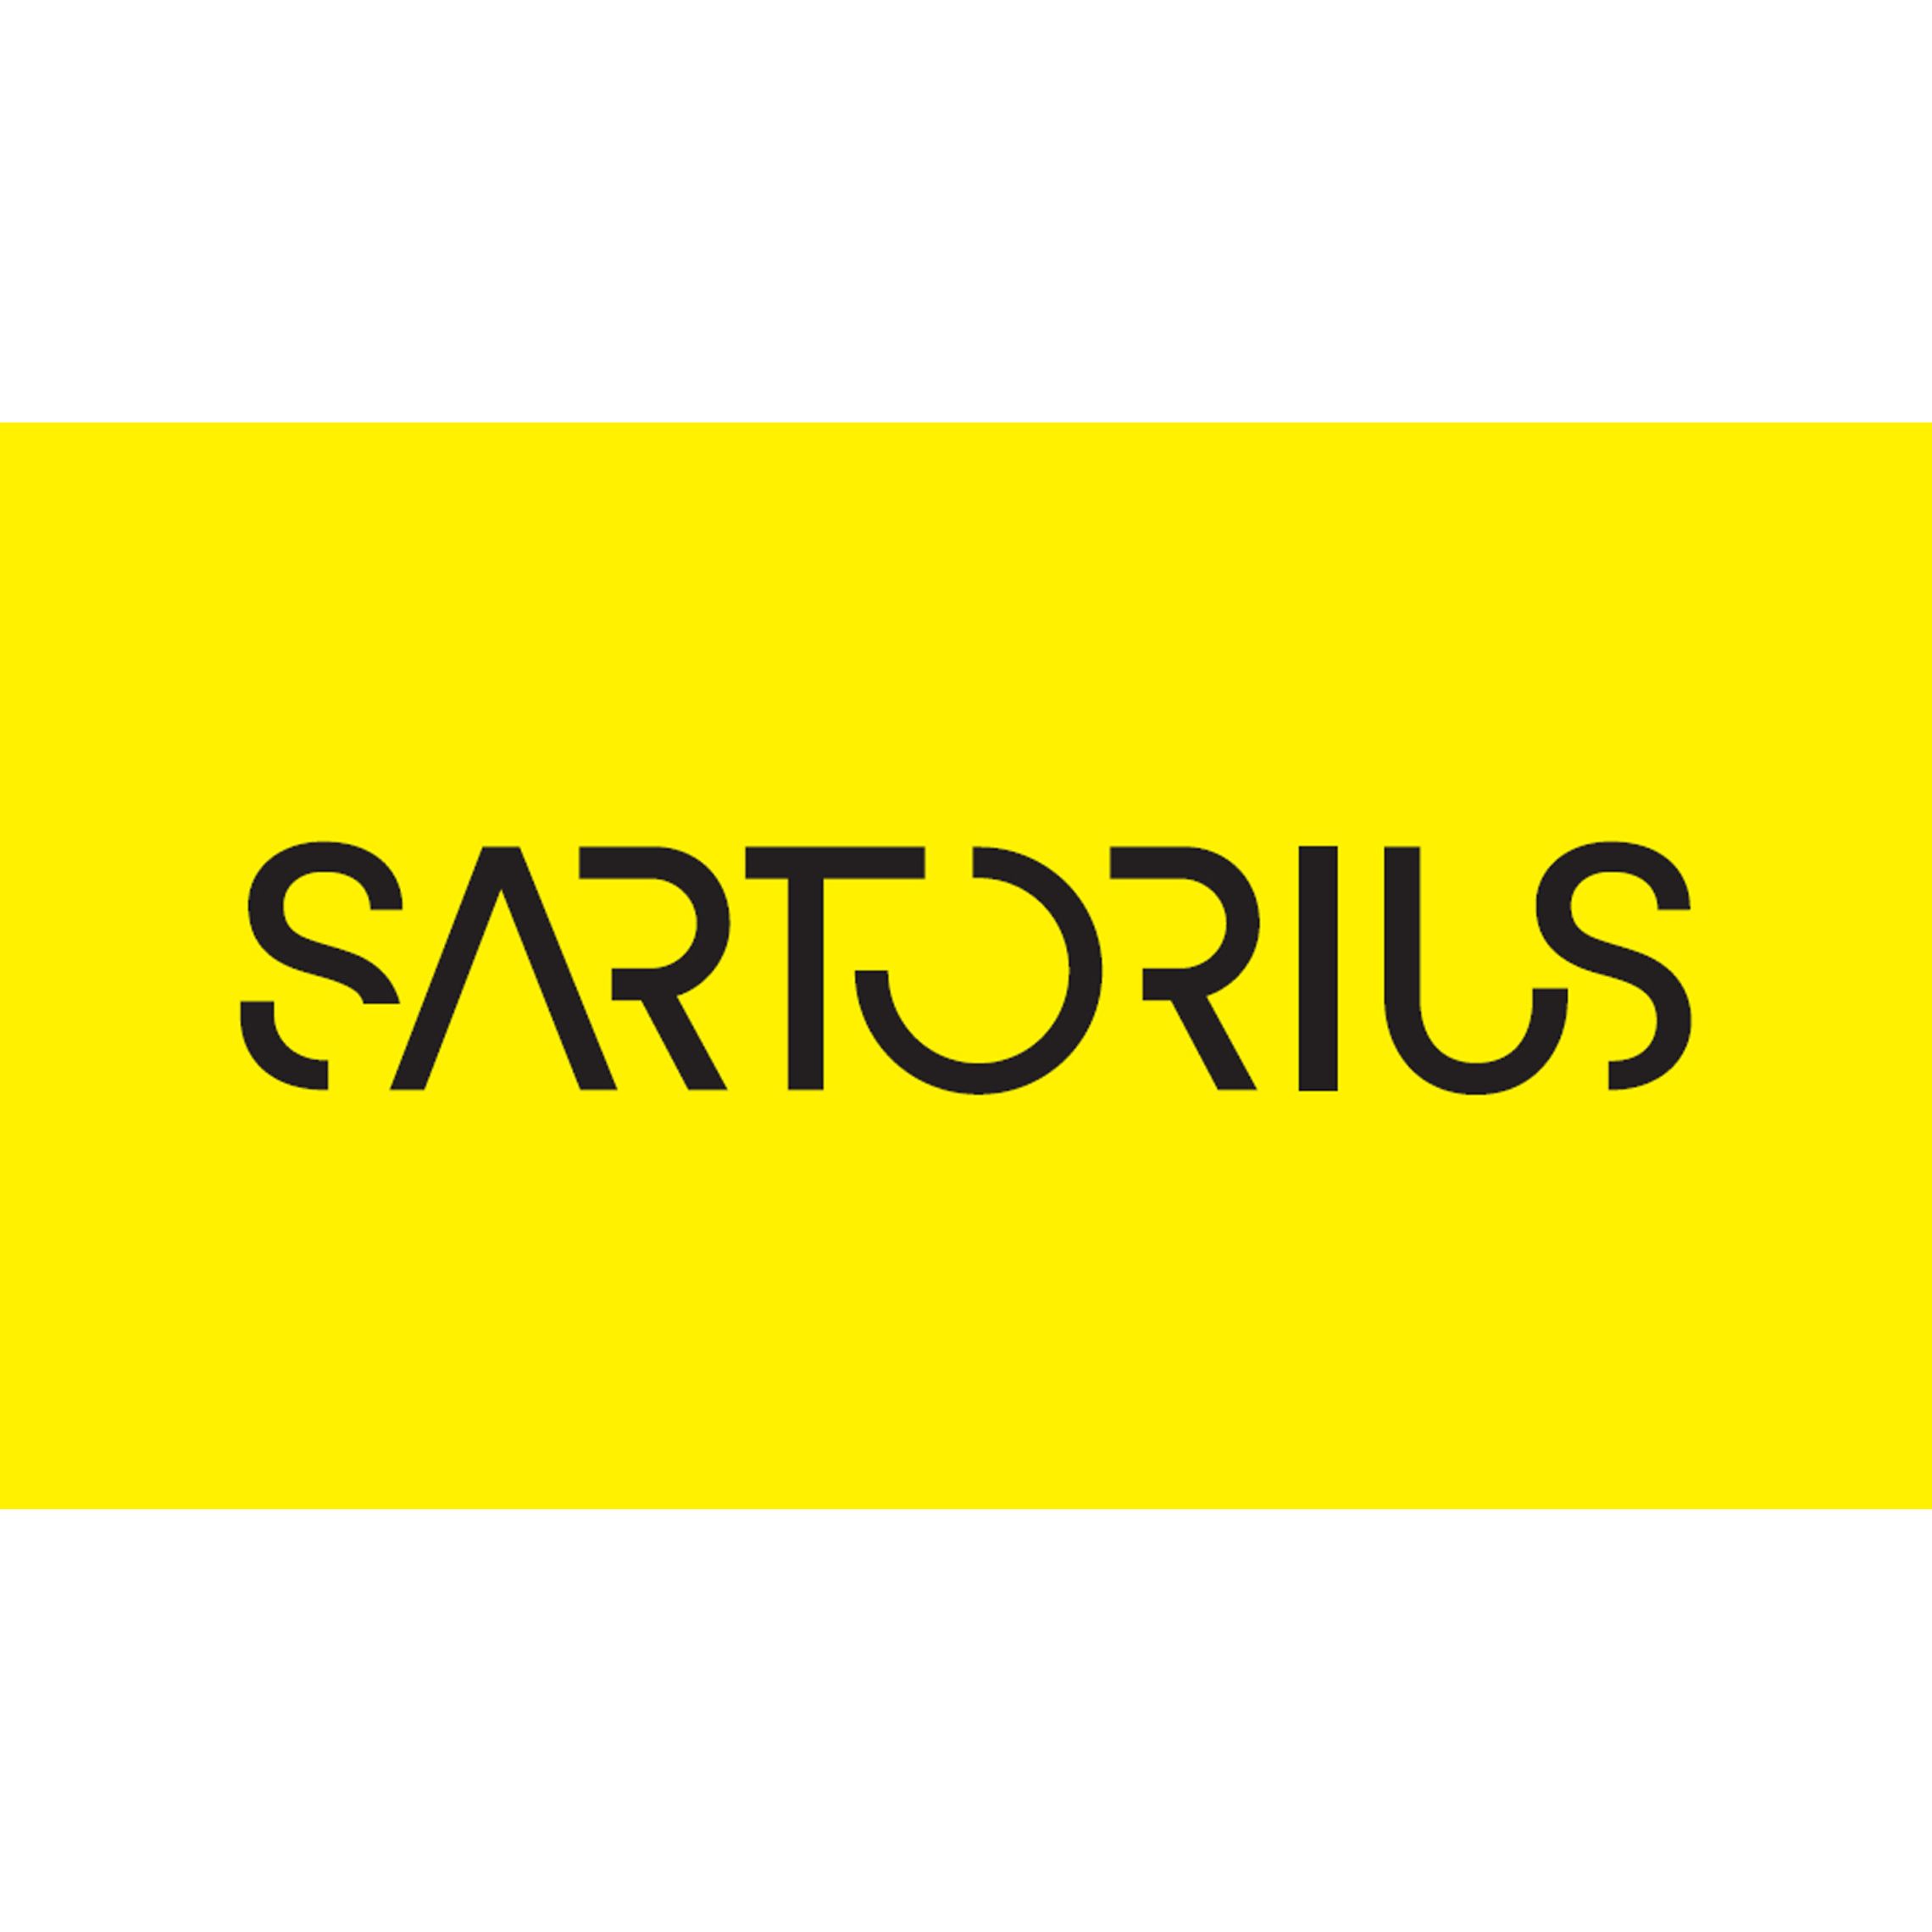 Sartorius | Biopharma, Laboratory, Applied & Life Sciences